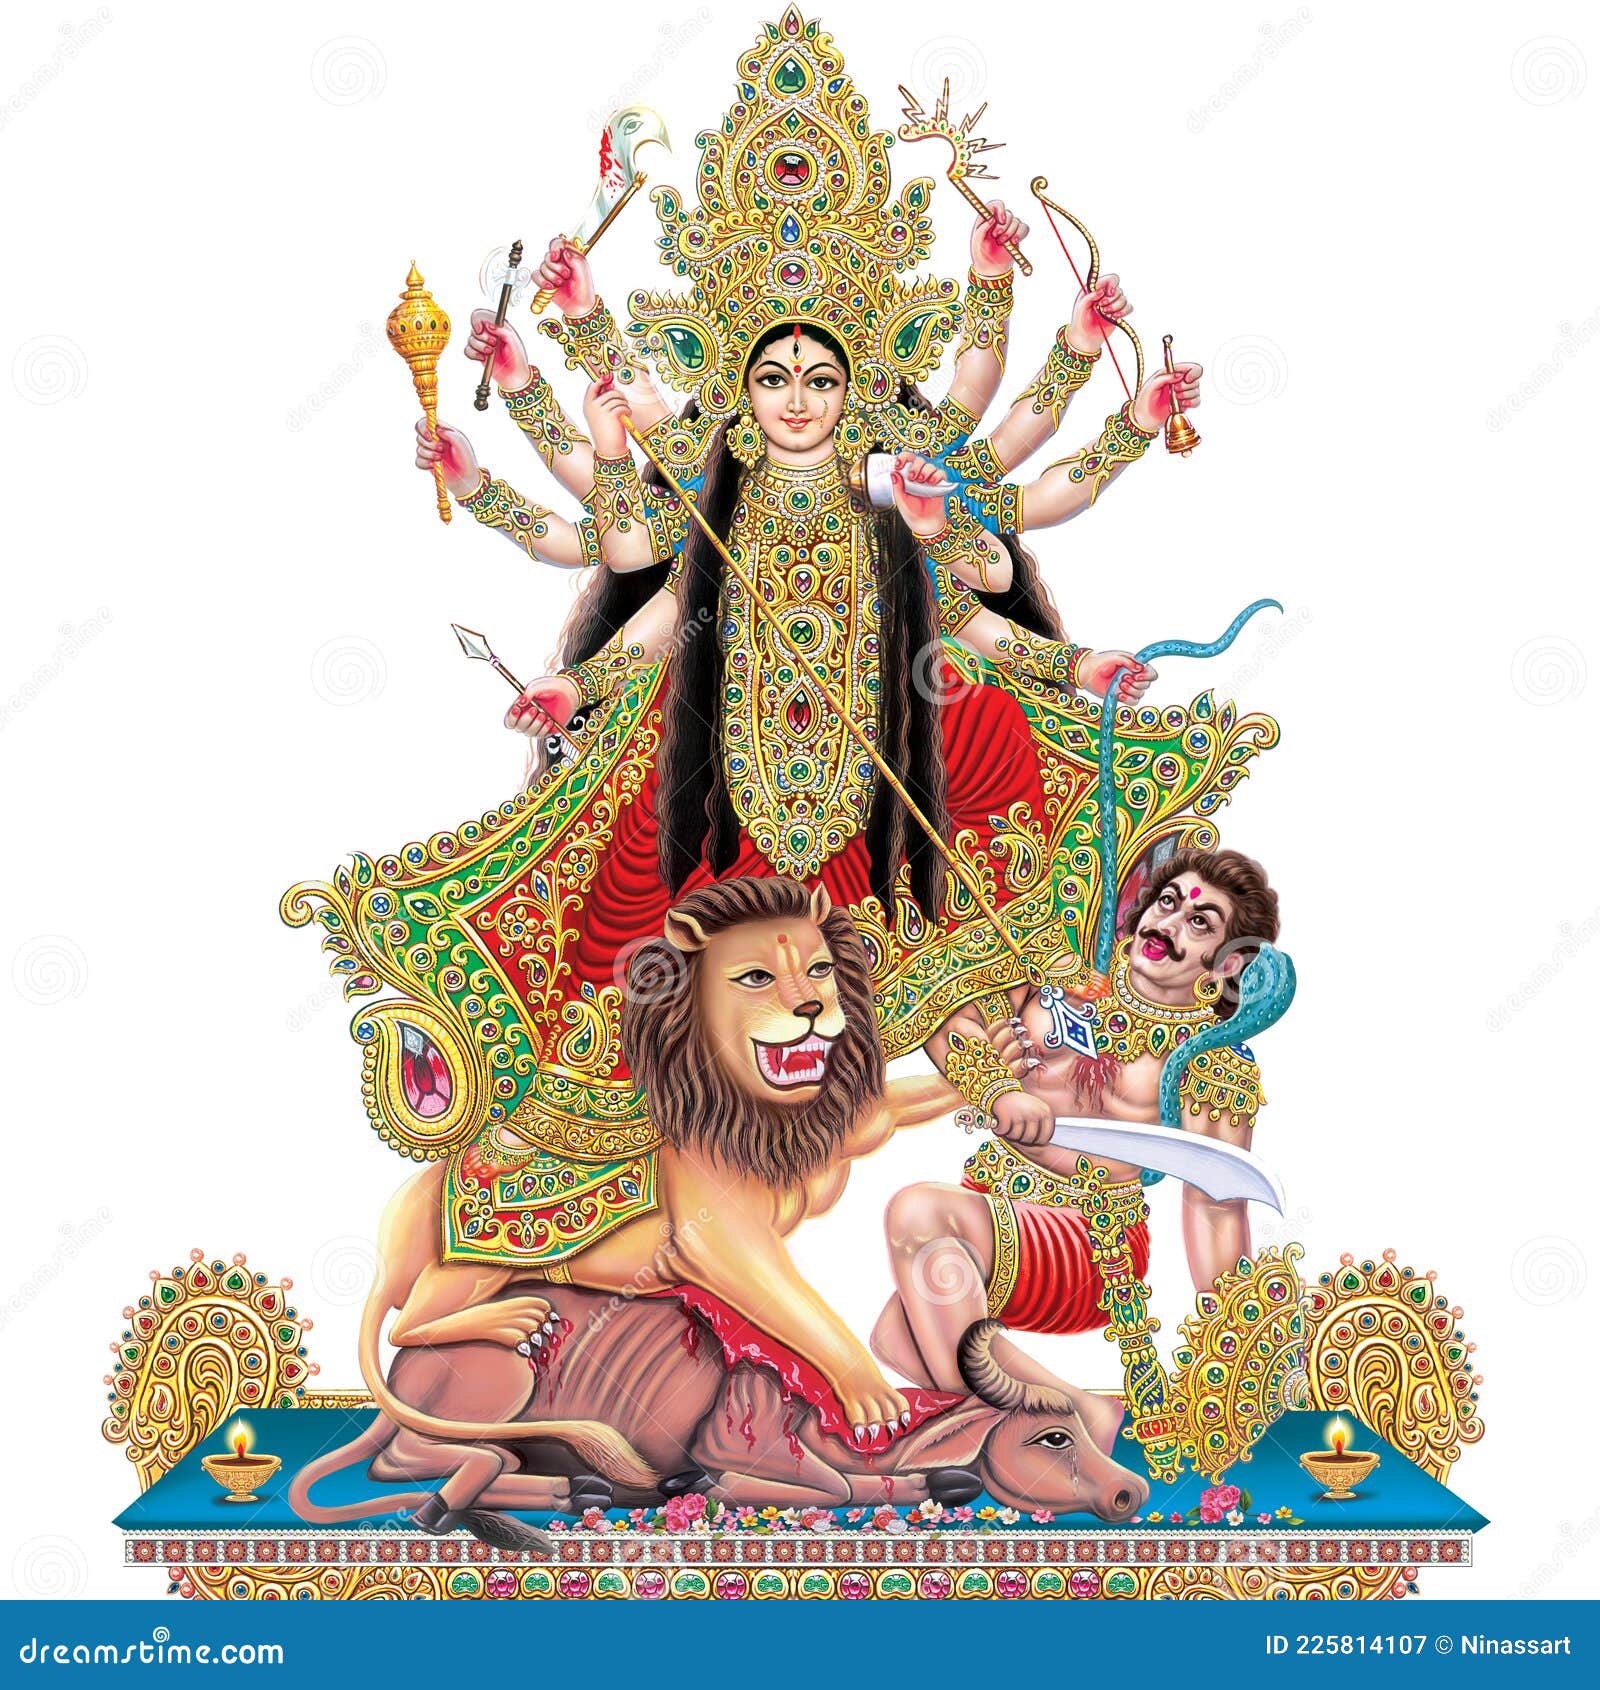 Lord Durga MAA Wallpapers - Wallpaper Cave